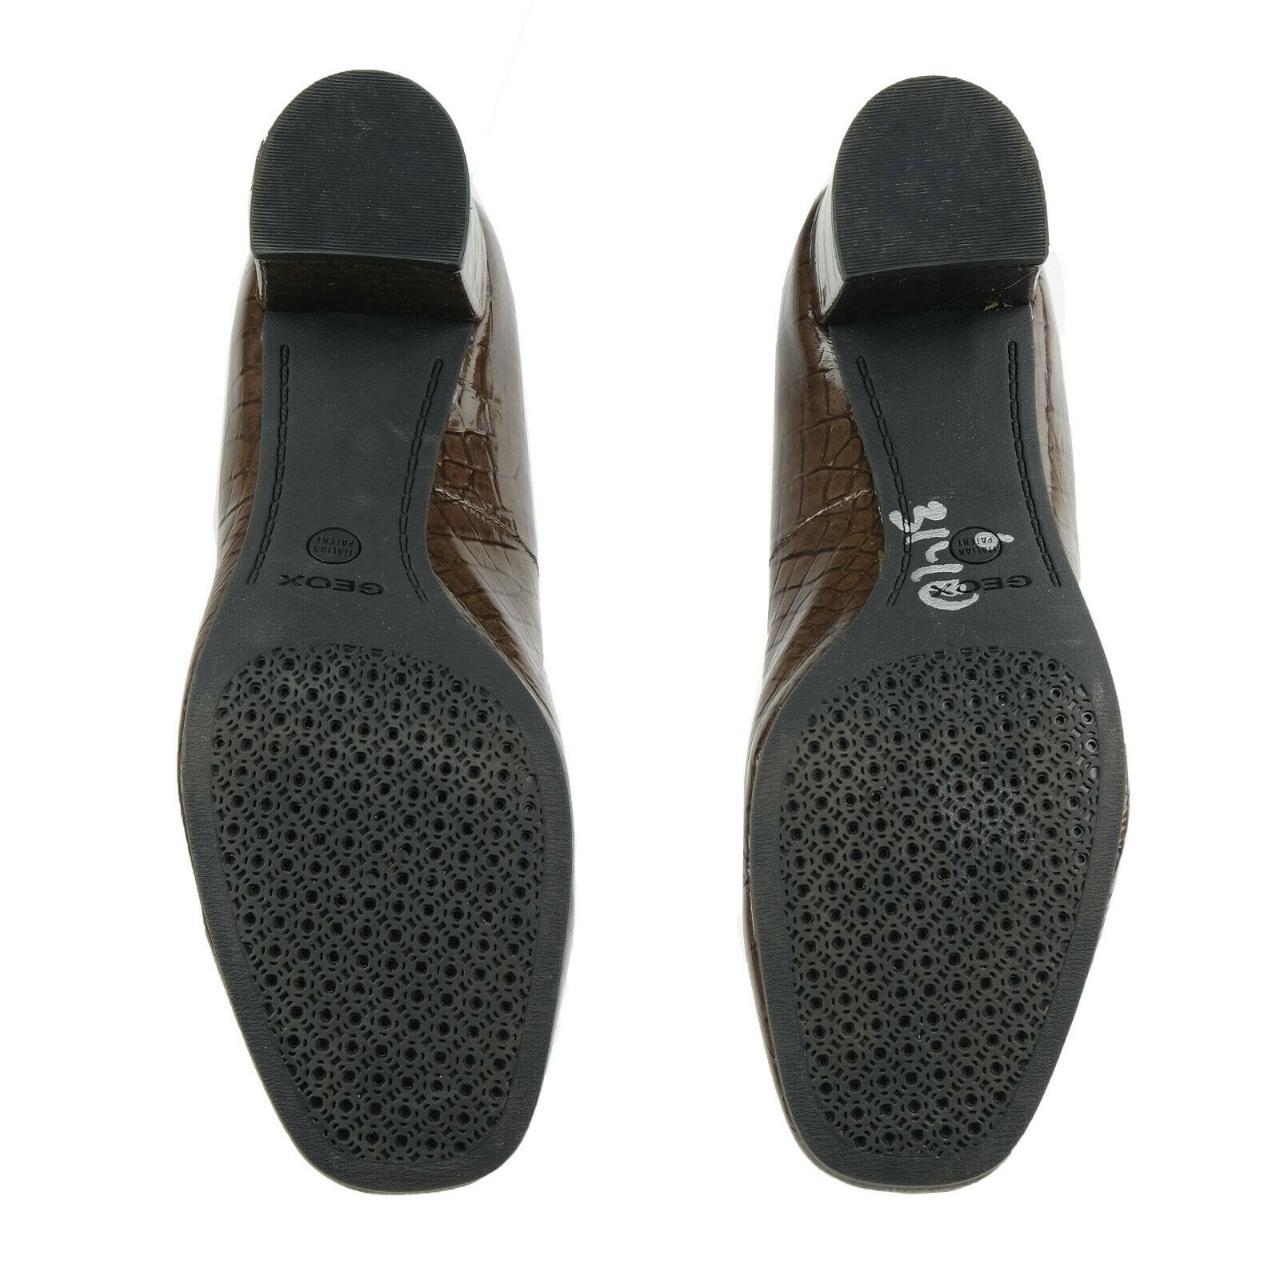 GEOX RESPIRA pumps / heels. Marked size 38.5 (EU... - Depop